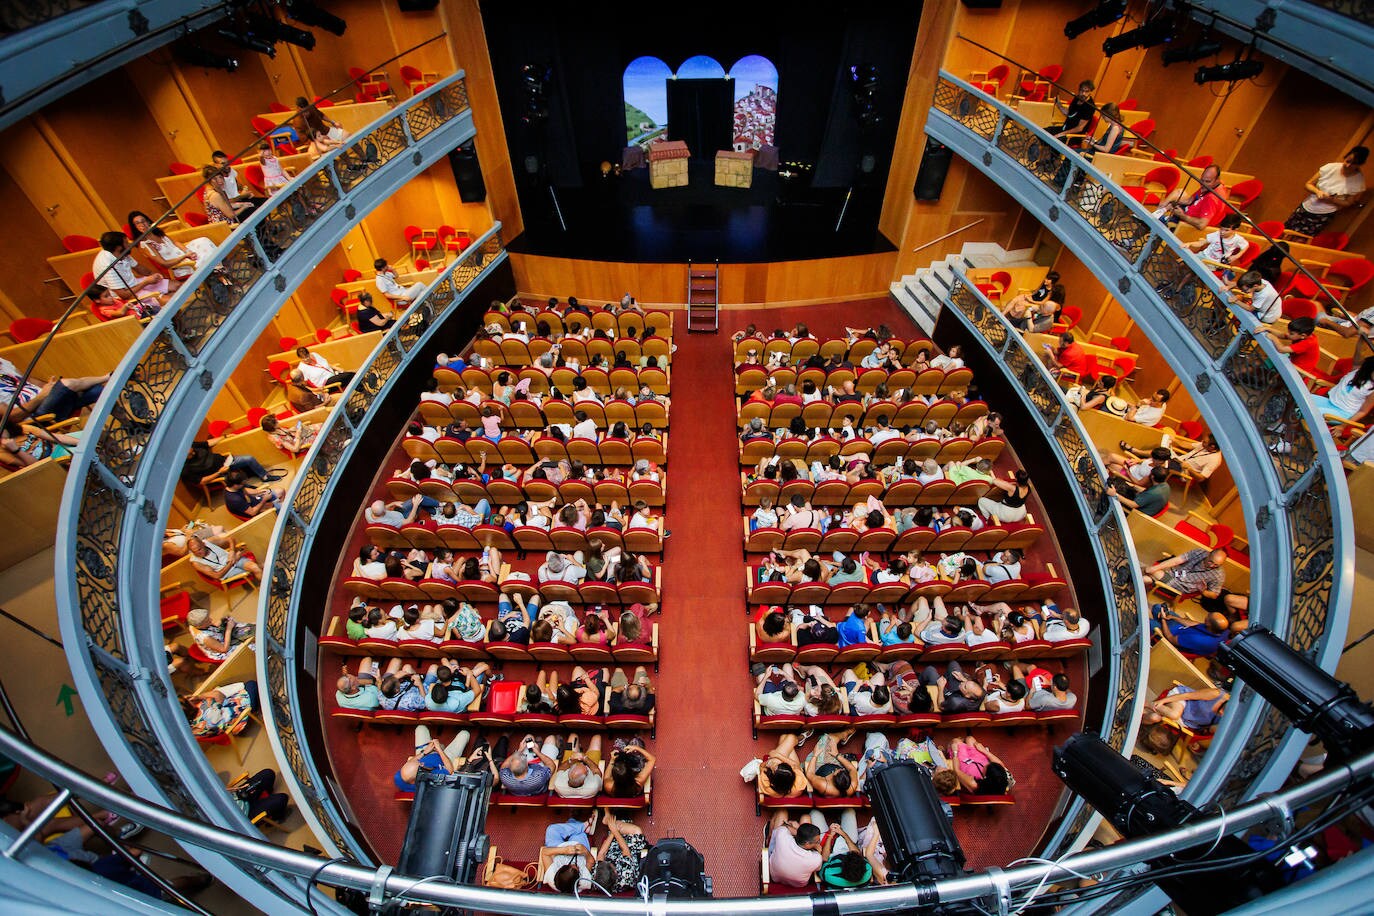 Imagen secundaria 1 - La Feria de Teatro alcanza su ecuador con 16 funciones en una docena de espectáculos diferentes